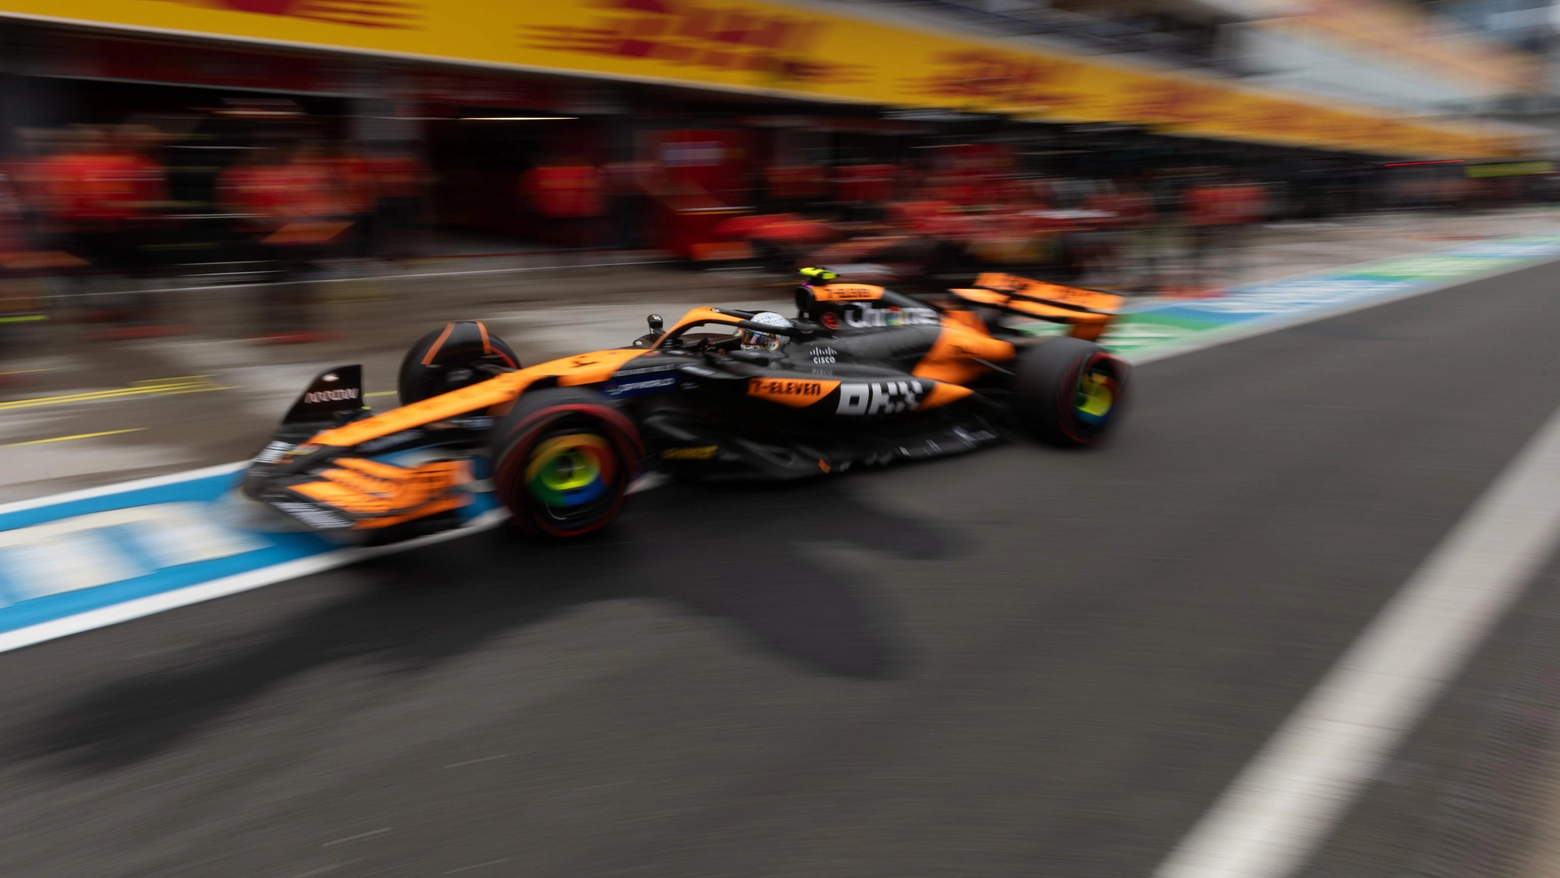 Le McLaren hanno fatto doppietta in qualifica e vogliono ripetersi in gara. Alle loro spalle ci sarà il solito Super Max